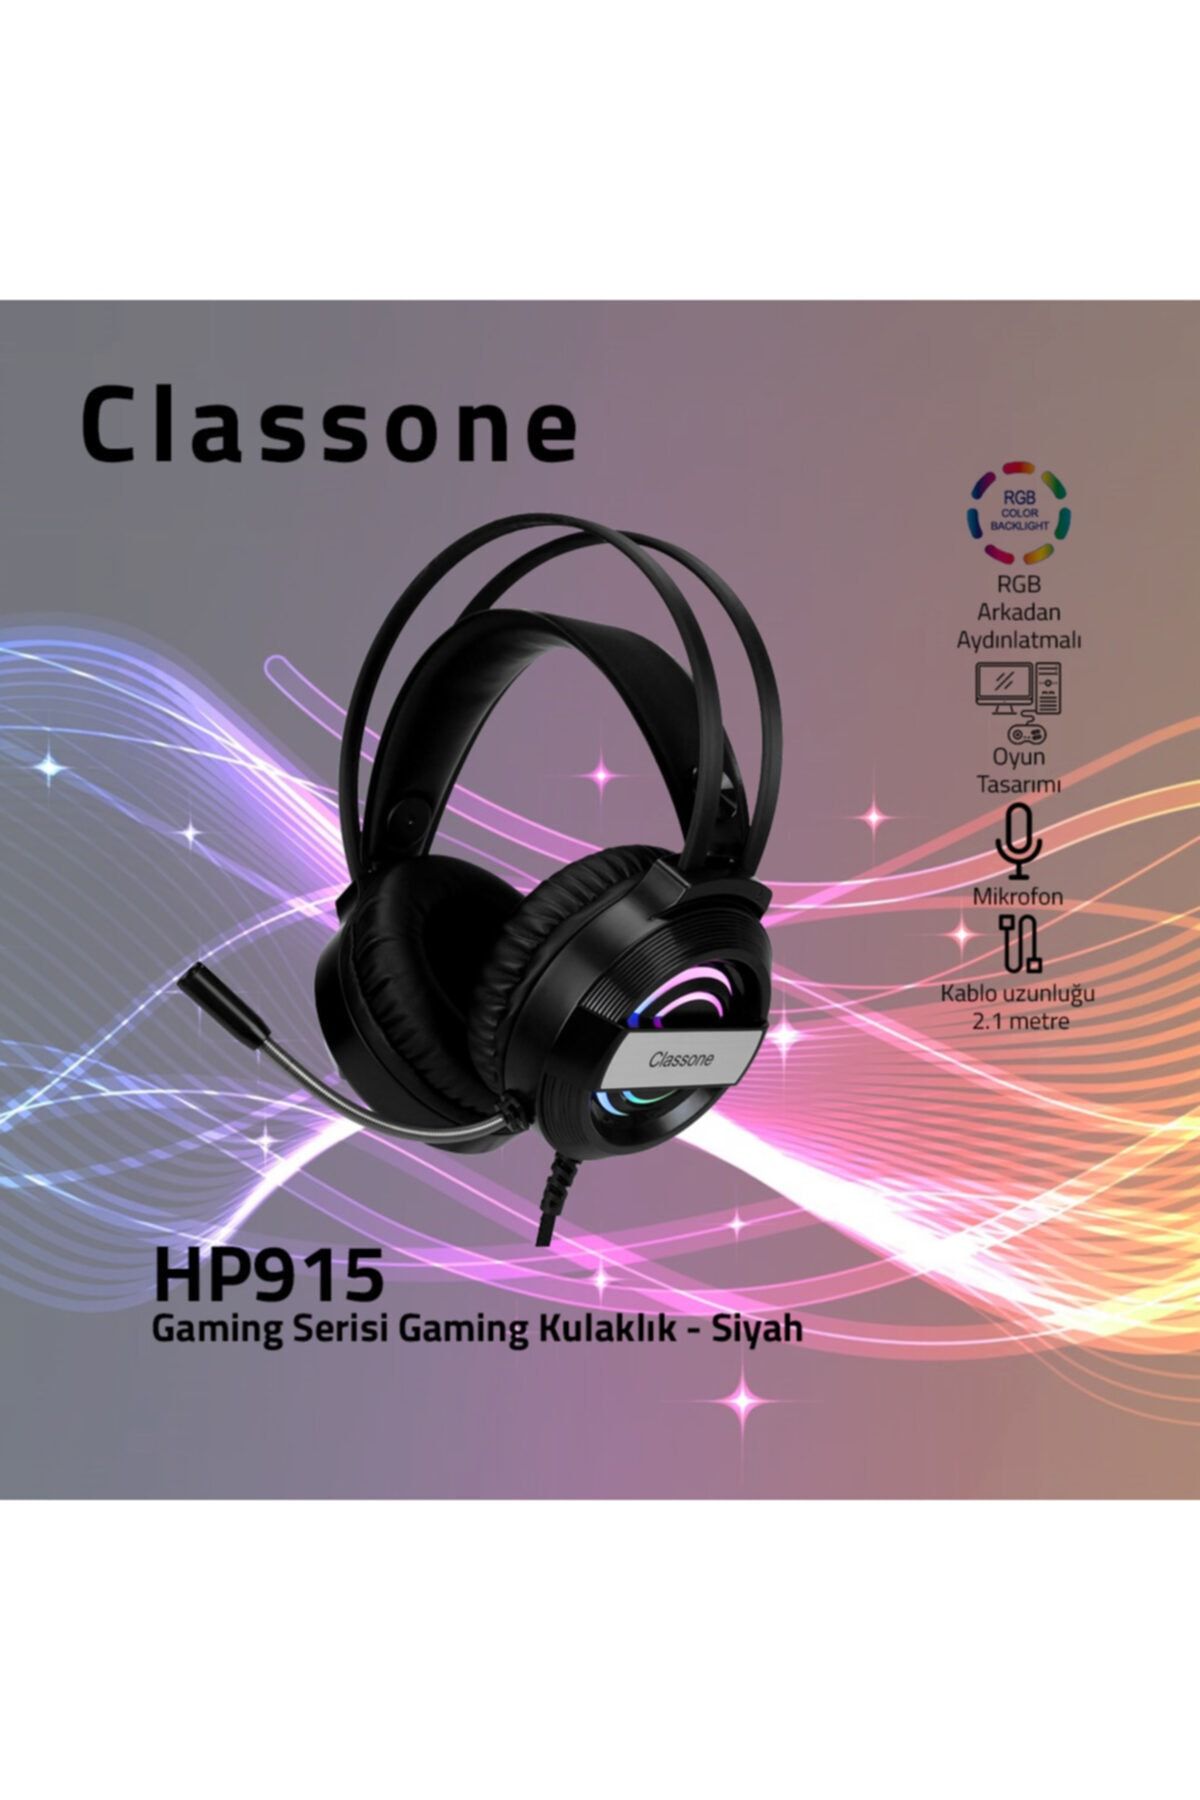 Classone Hp915, Rgb, 7.1 Surround Gaming Kulaklık